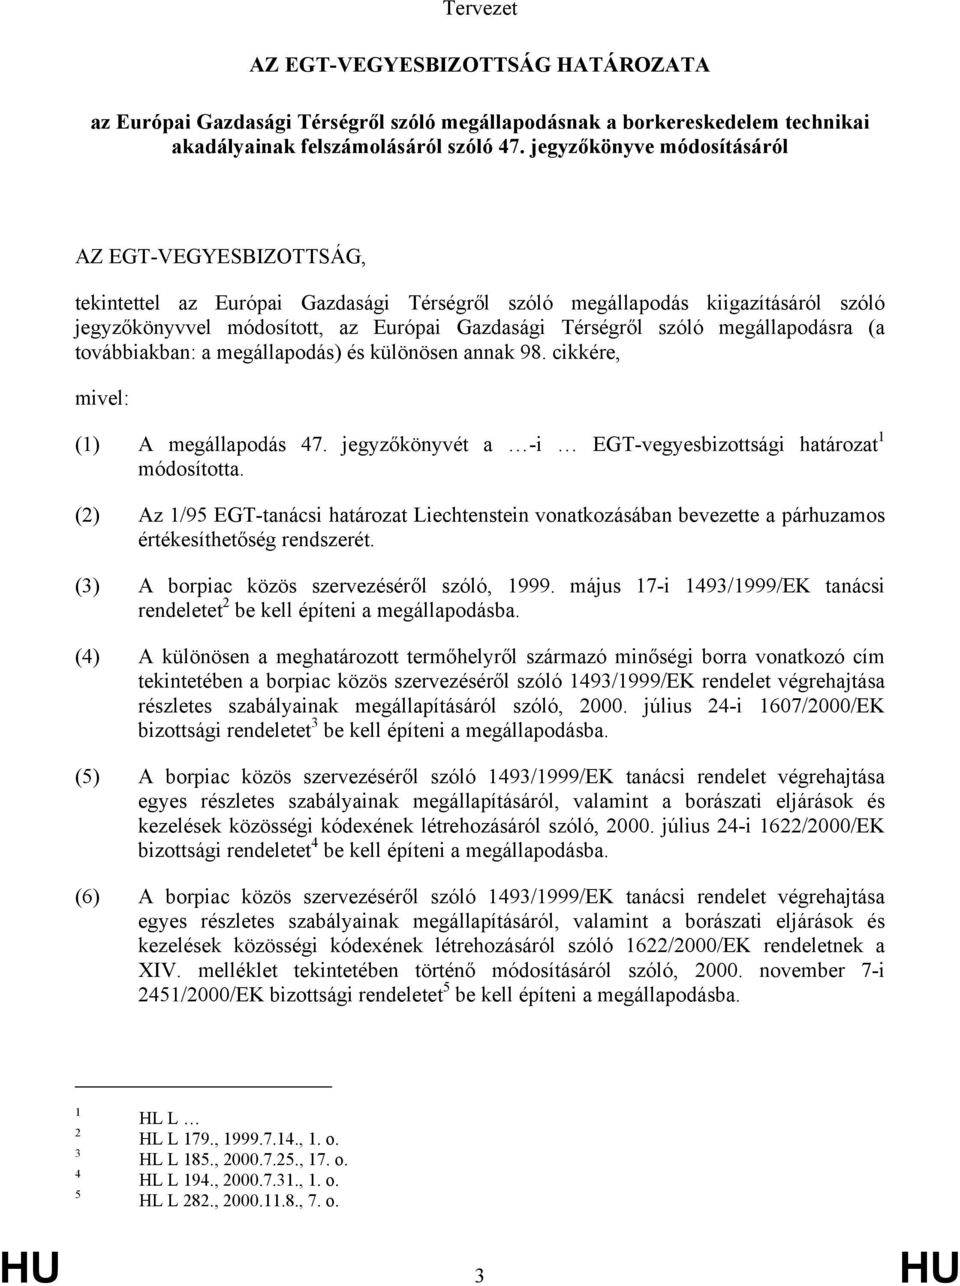 megállapodásra (a továbbiakban: a megállapodás) és különösen annak 98. cikkére, mivel: (1) A megállapodás 47. jegyzőkönyvét a -i EGT-vegyesbizottsági határozat 1 módosította.